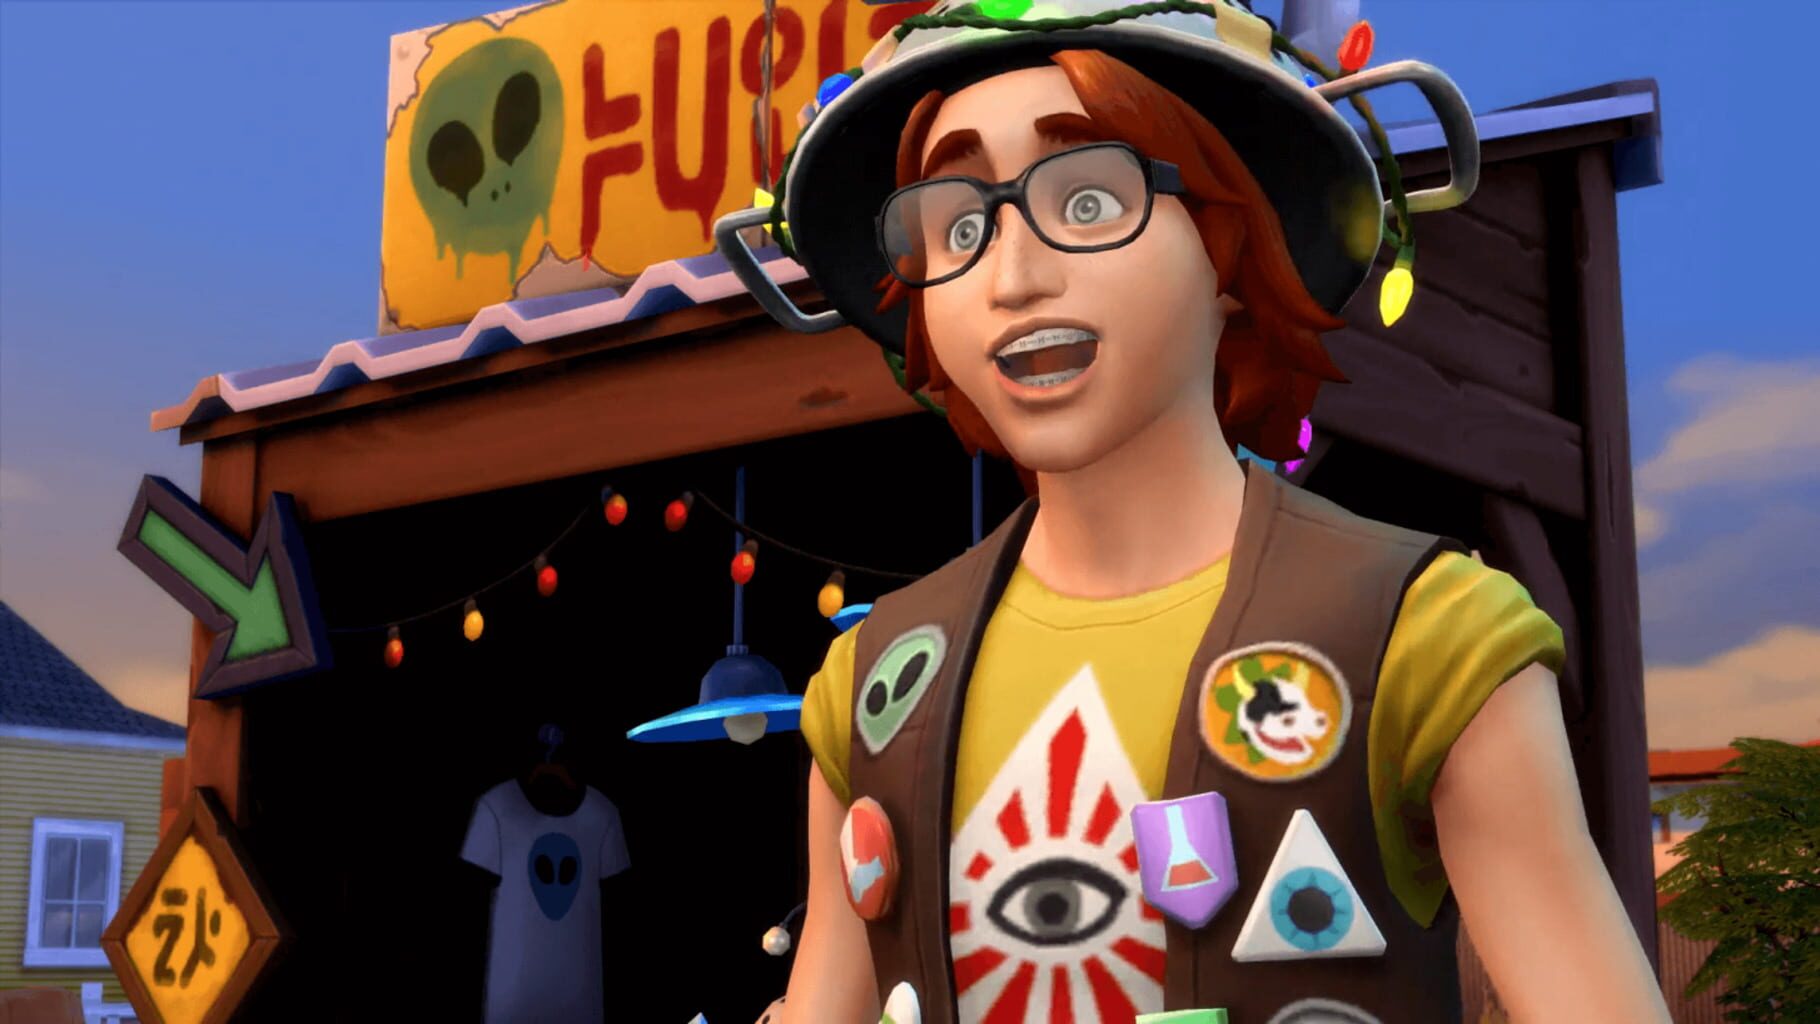 Captura de pantalla - The Sims 4: StrangerVille